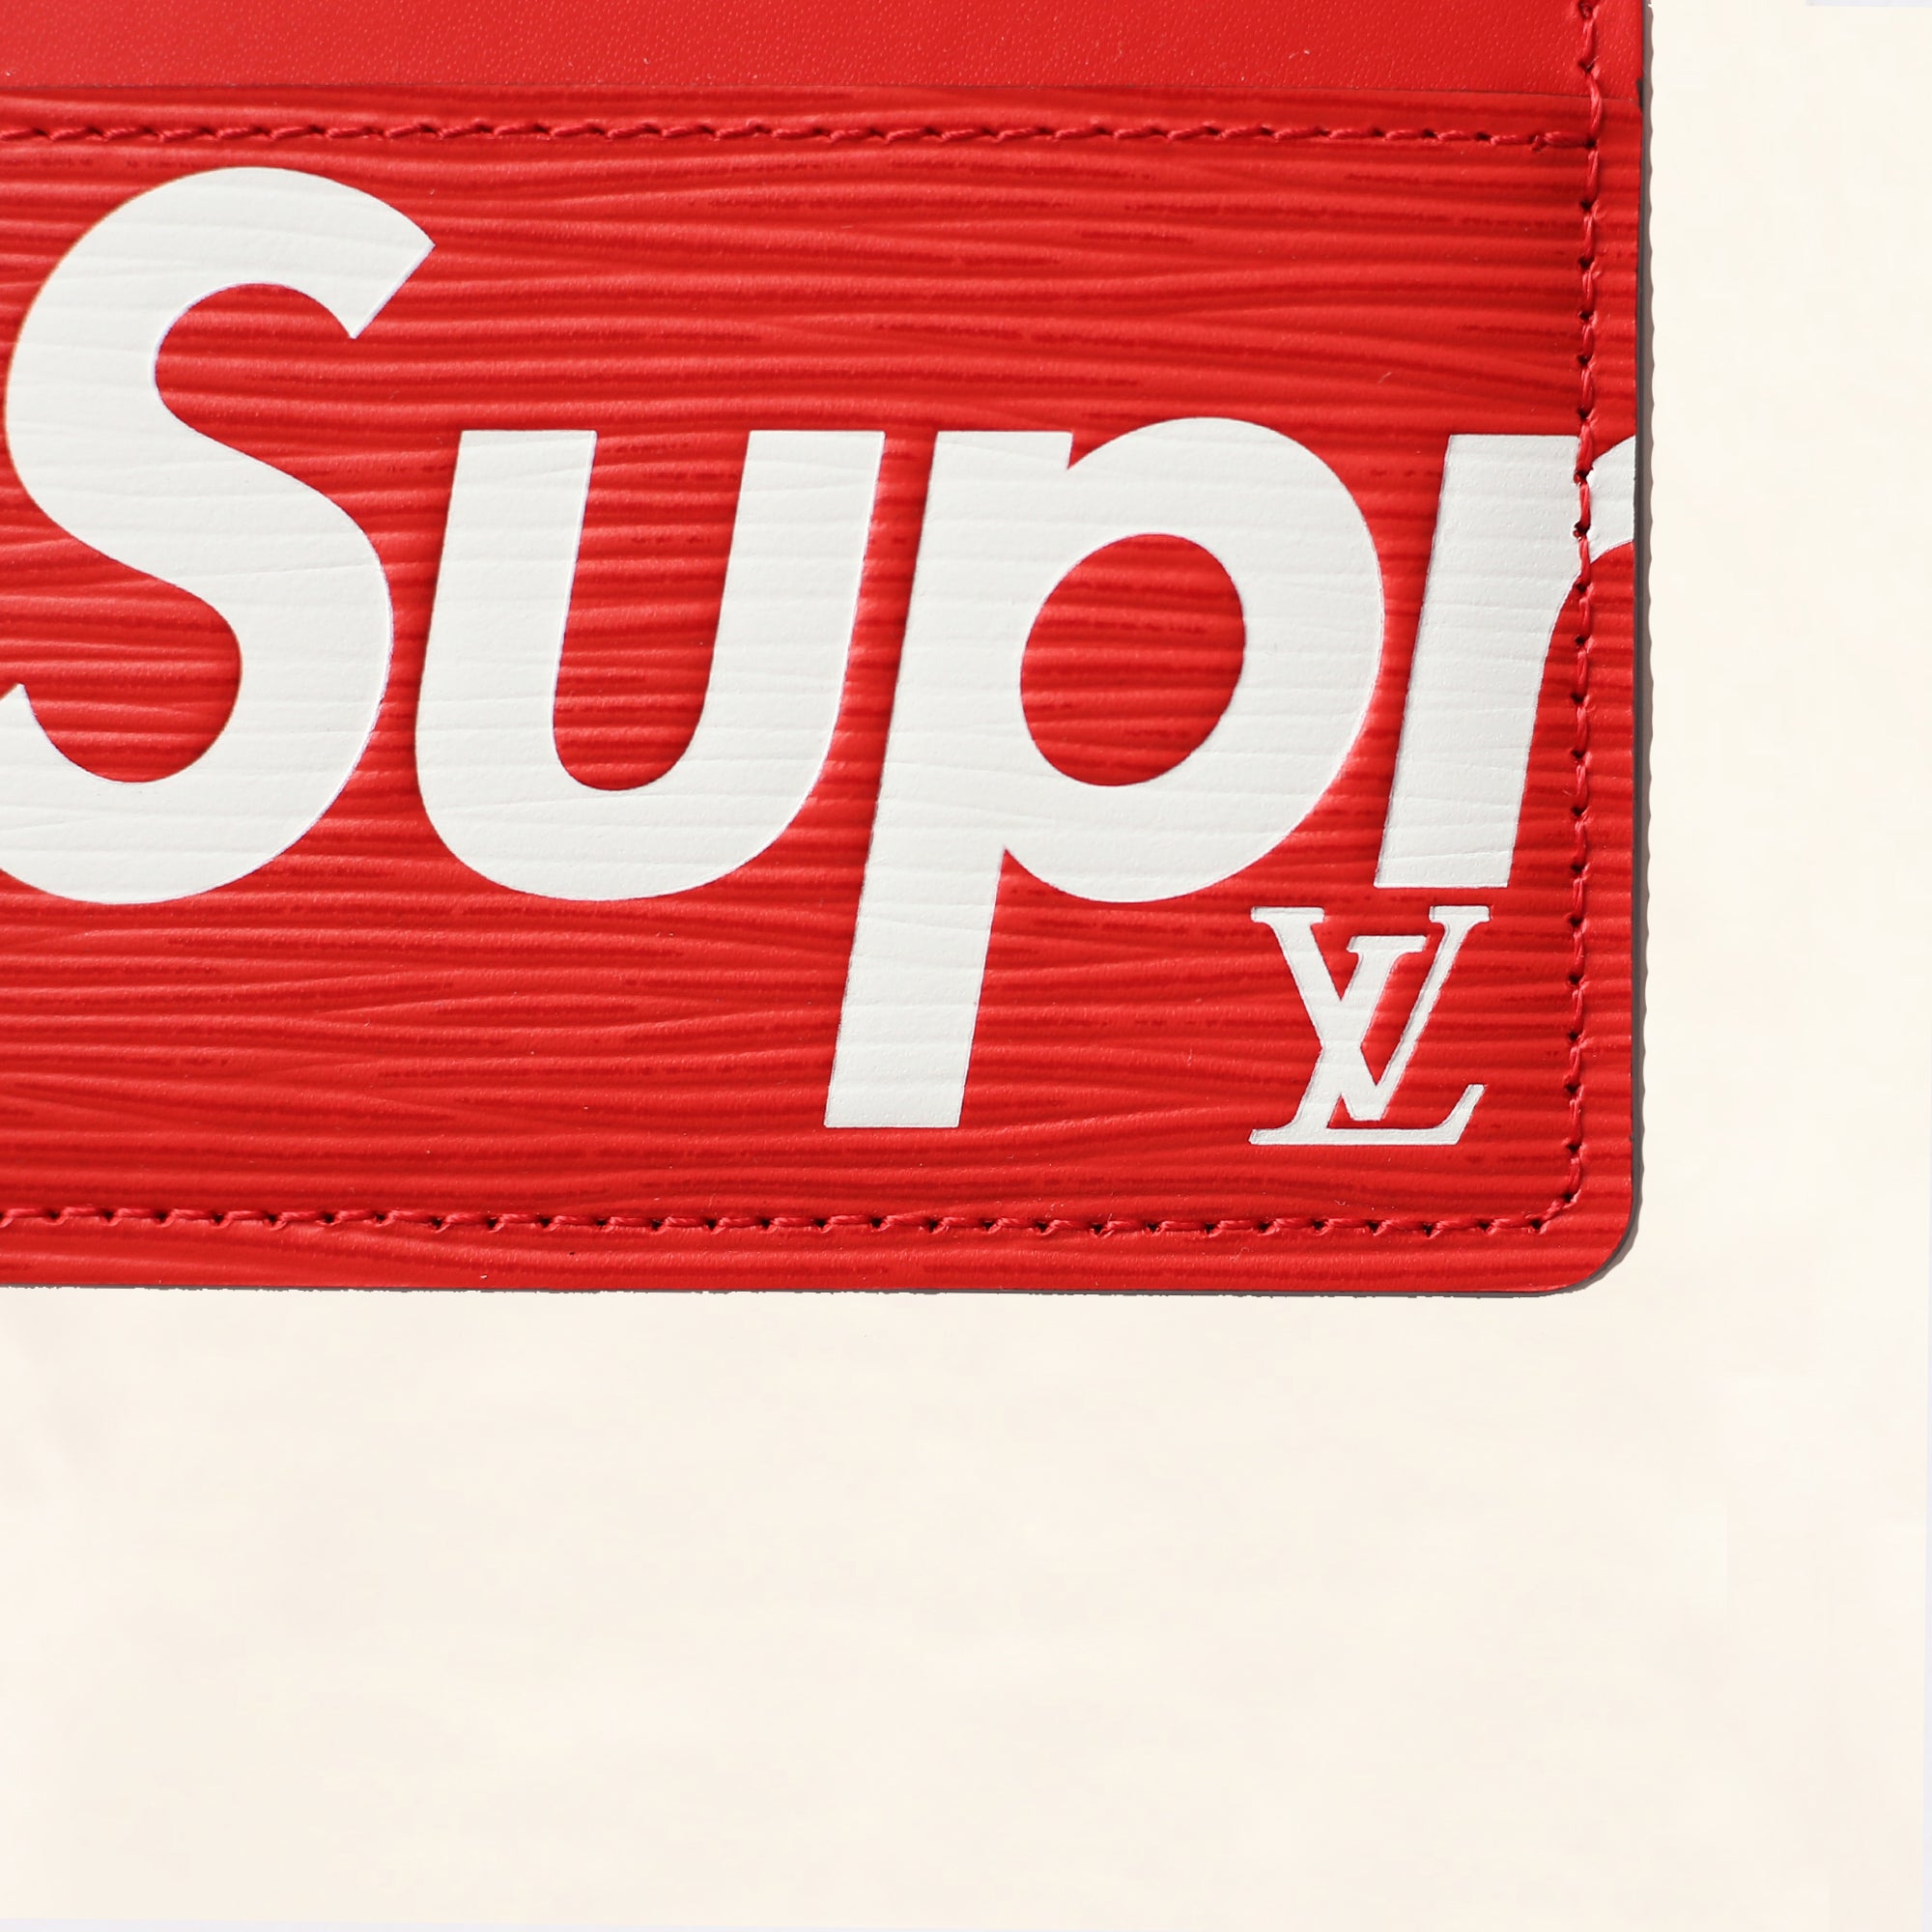 supreme lv red wallet